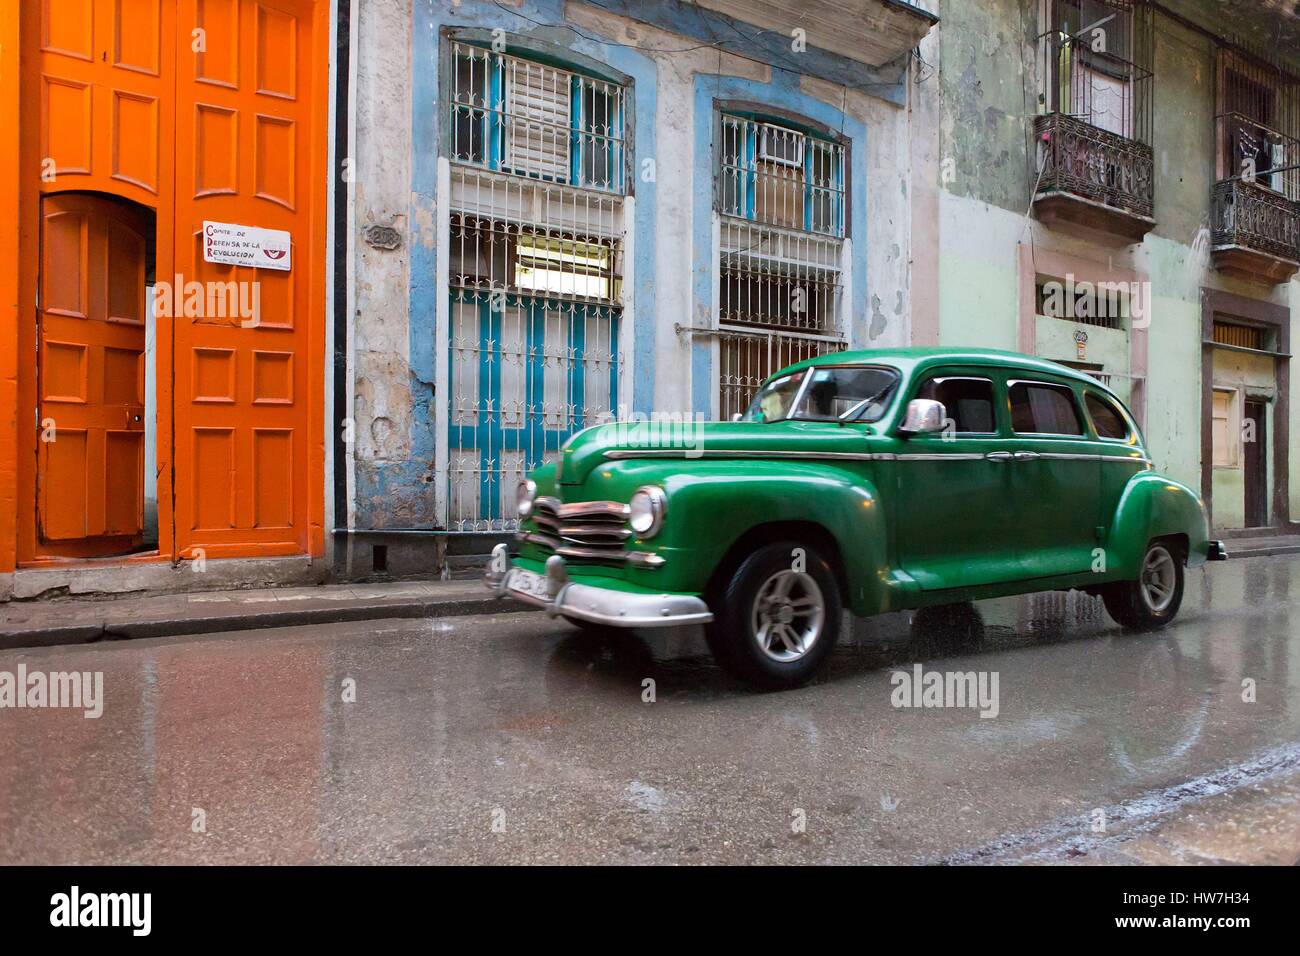 Cuba, Ciudad de la Habana Province, La Havana, La Habana Vieja district elencati come patrimonio mondiale dall' UNESCO, vettura americana sotto la pioggia lungo una porta dipinta da artista francese Daniel Buren durante il 2015 l'arte contemporanea evento biennale Foto Stock